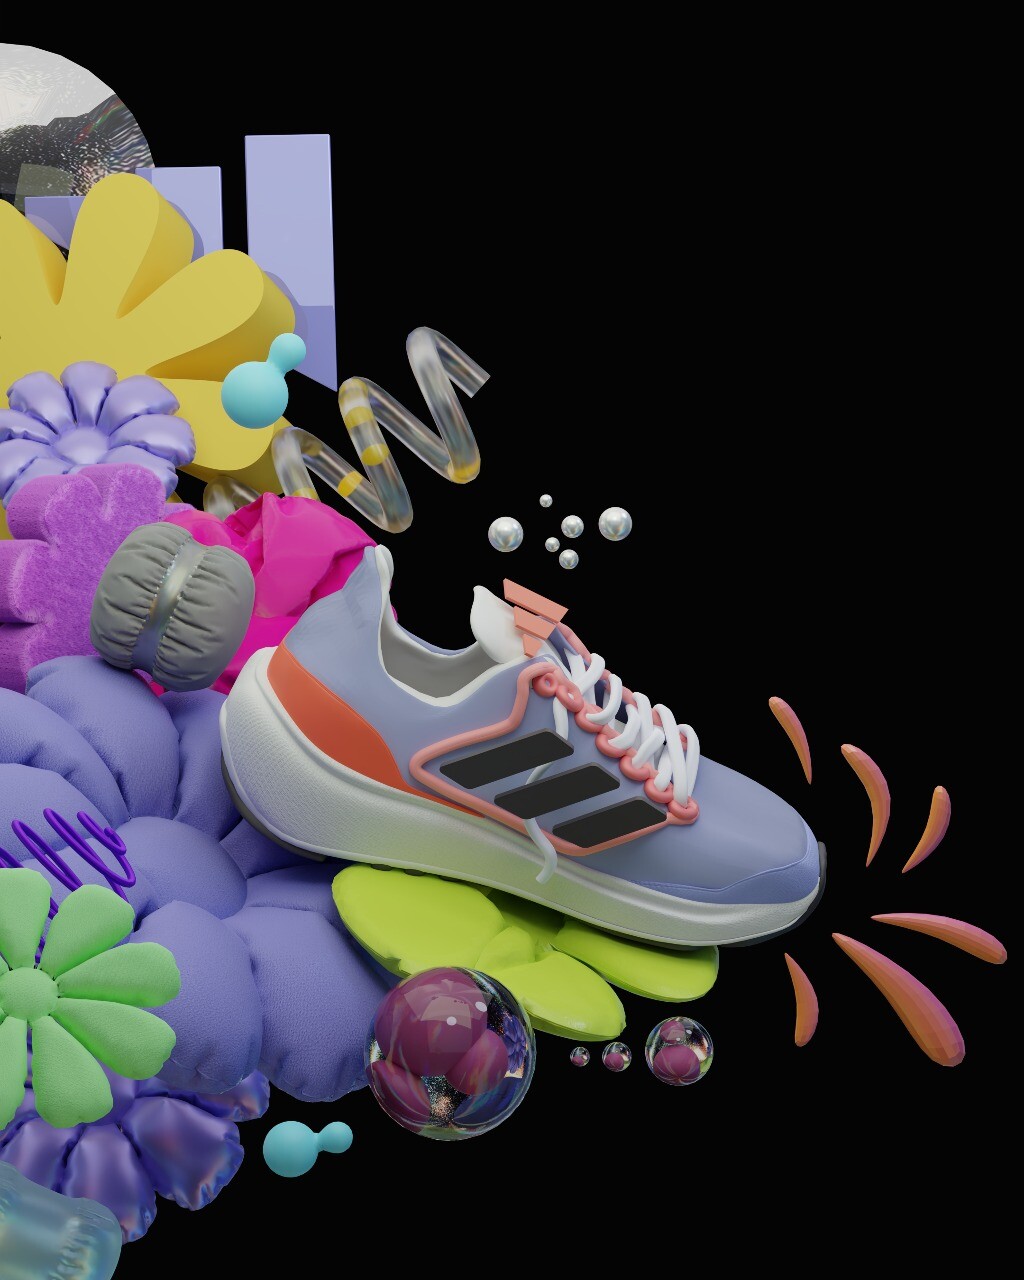 ArtStation - Adidas shoes animation